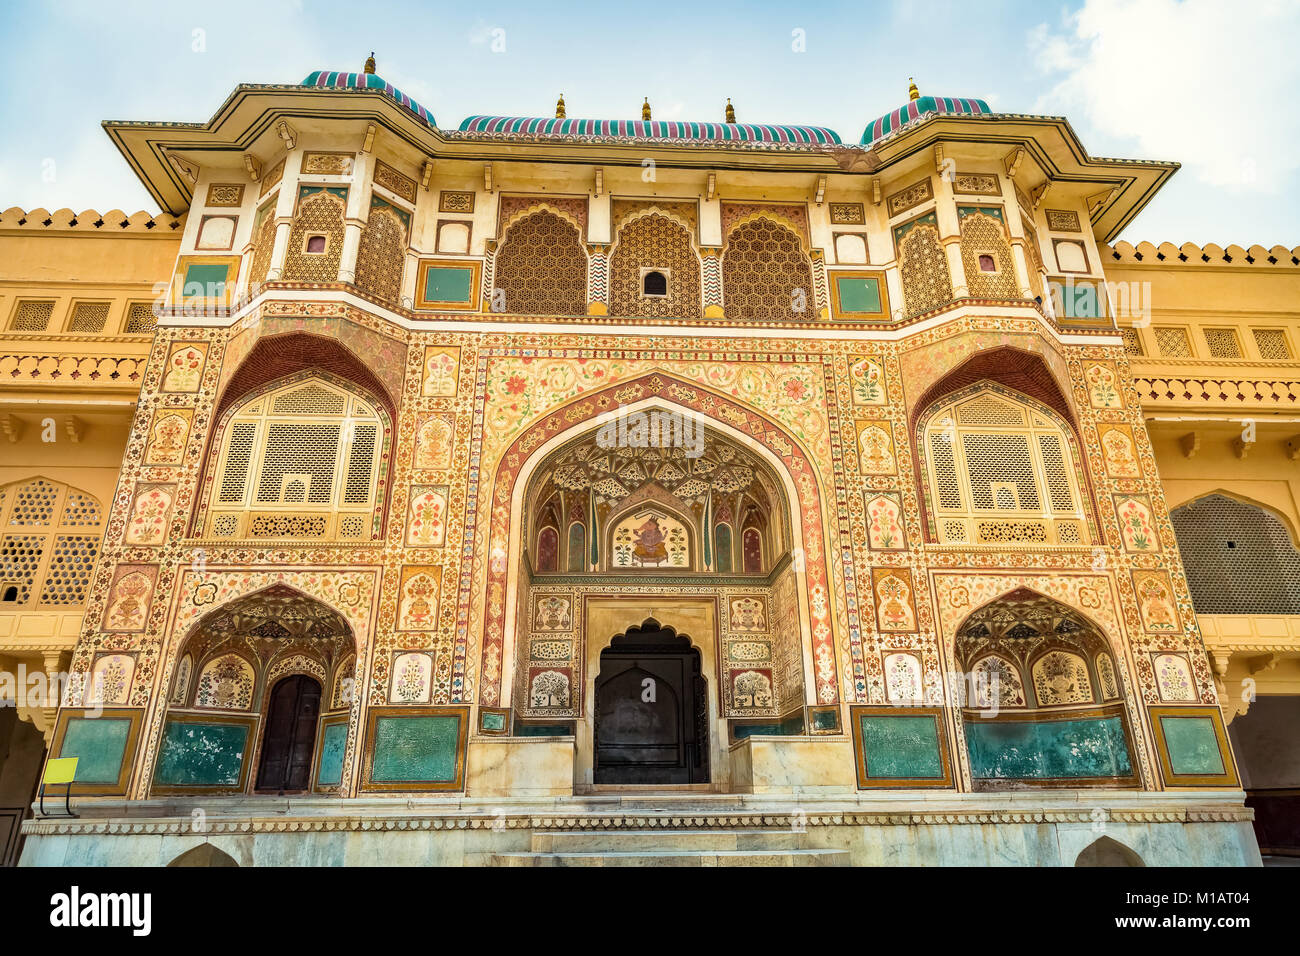 Amer Fort Jaipur Rajasthan Haupteingang Gateway mit aufwändigem Artwork und Säulen. Amber Fort ist ein UNESCO-Weltkulturerbe. Stockfoto